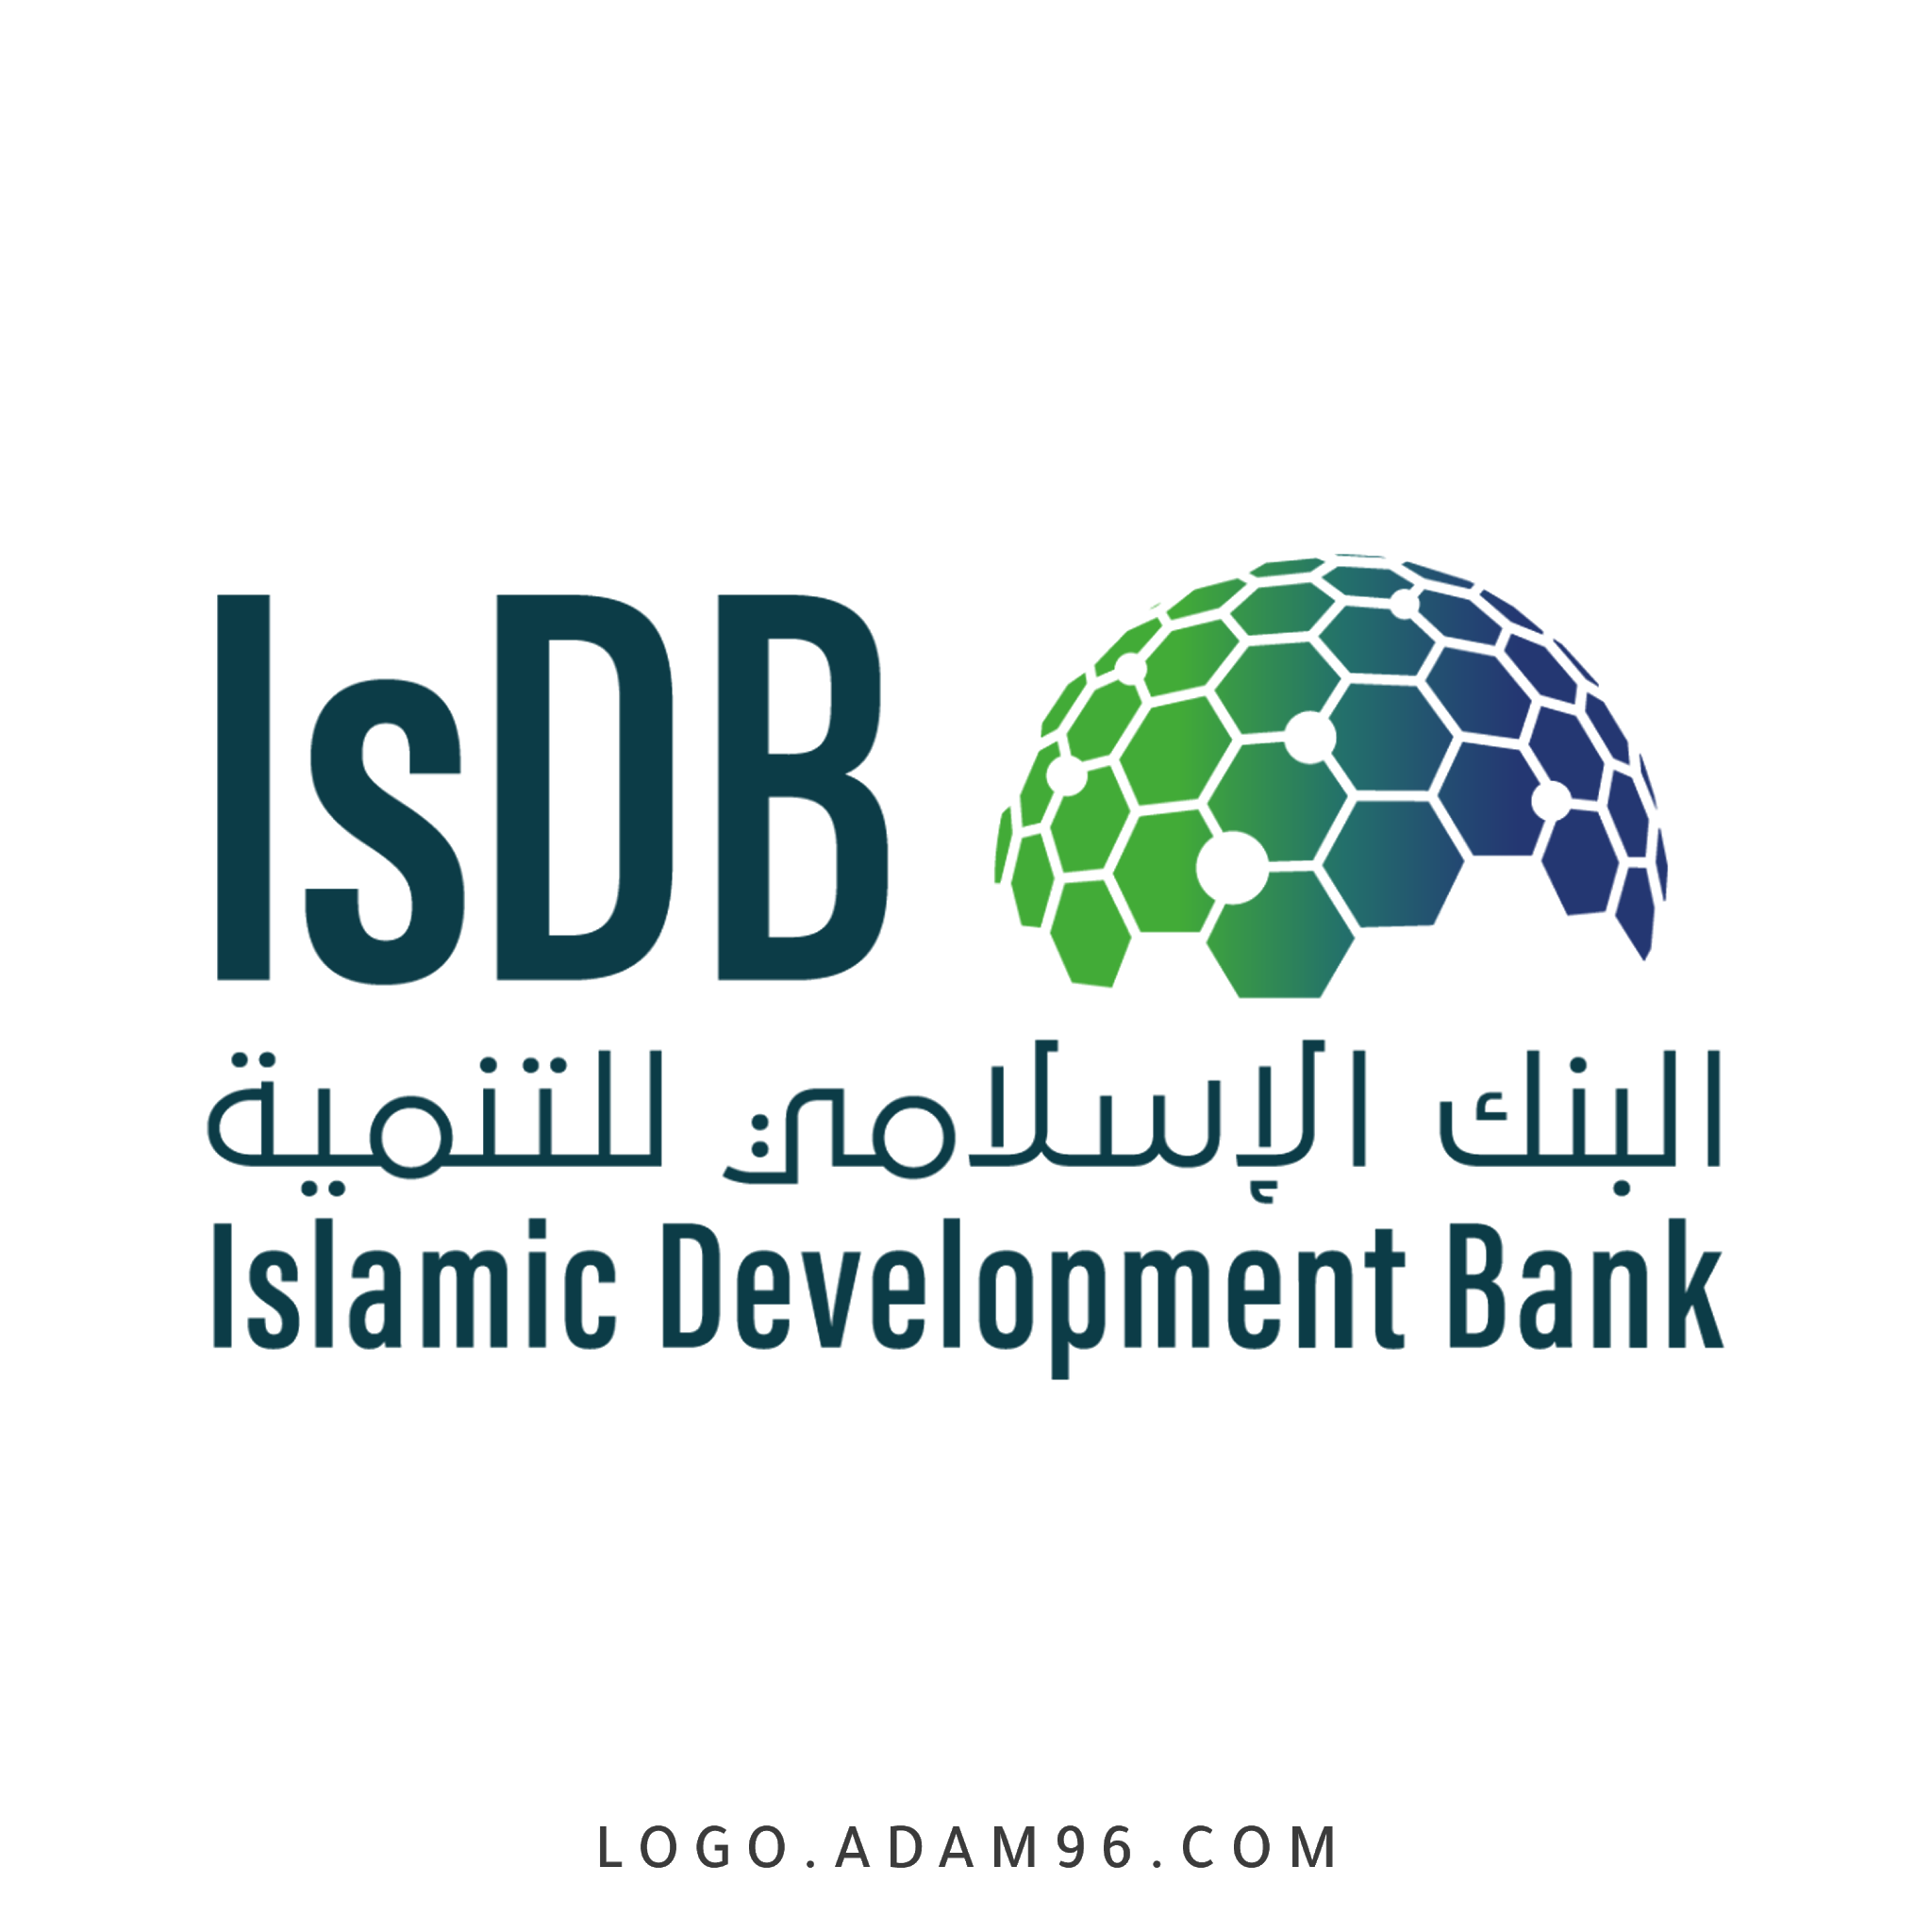 البنك-الاسلامي-للتنمية